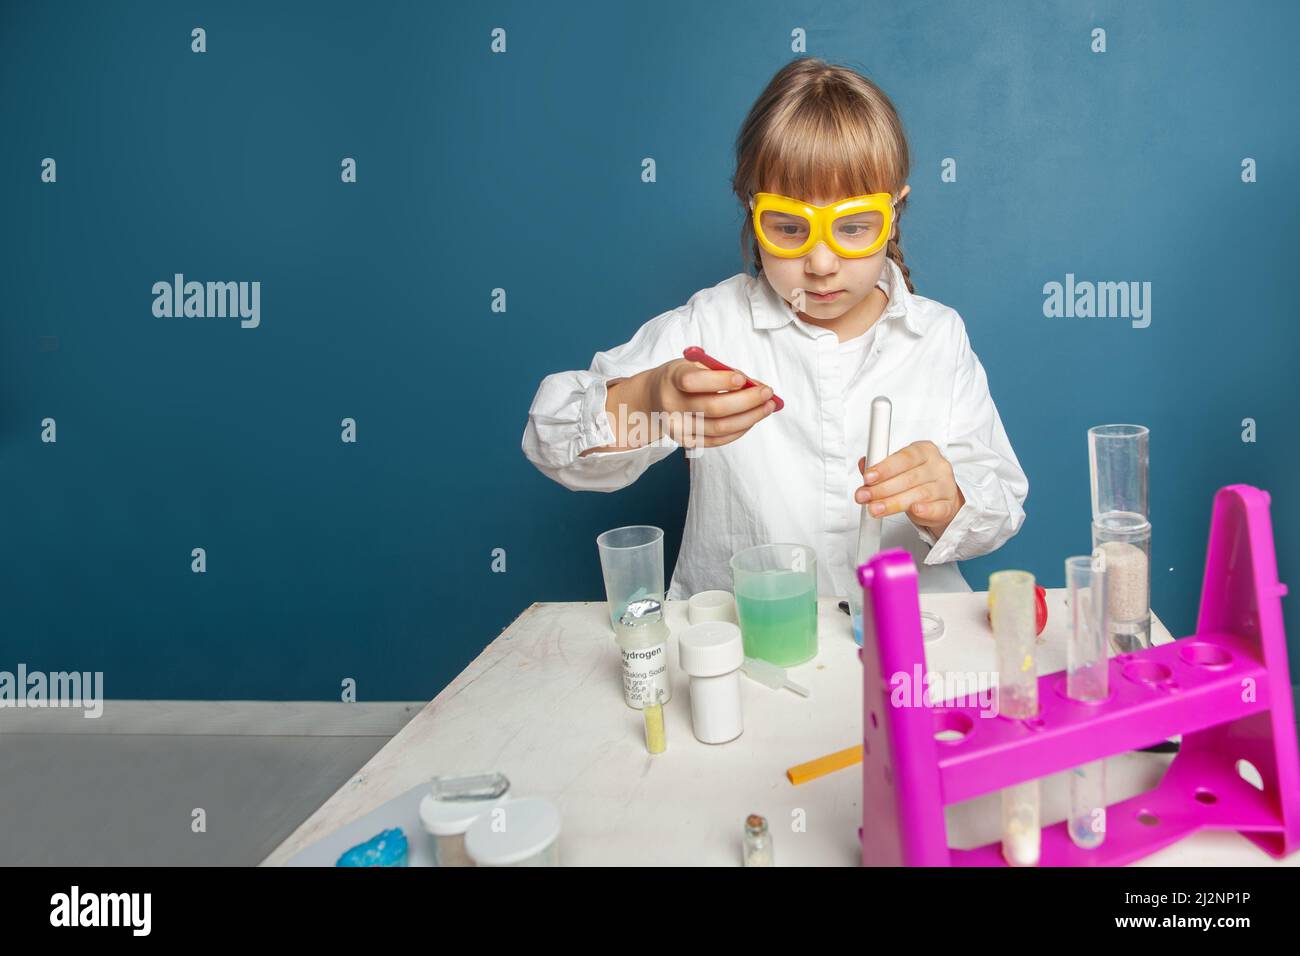 Studente ragazza intelligente imparare, fare un esperimento chimico e tenere provetta in mano in classe scientifica. Concetto di istruzione e scienza Foto Stock